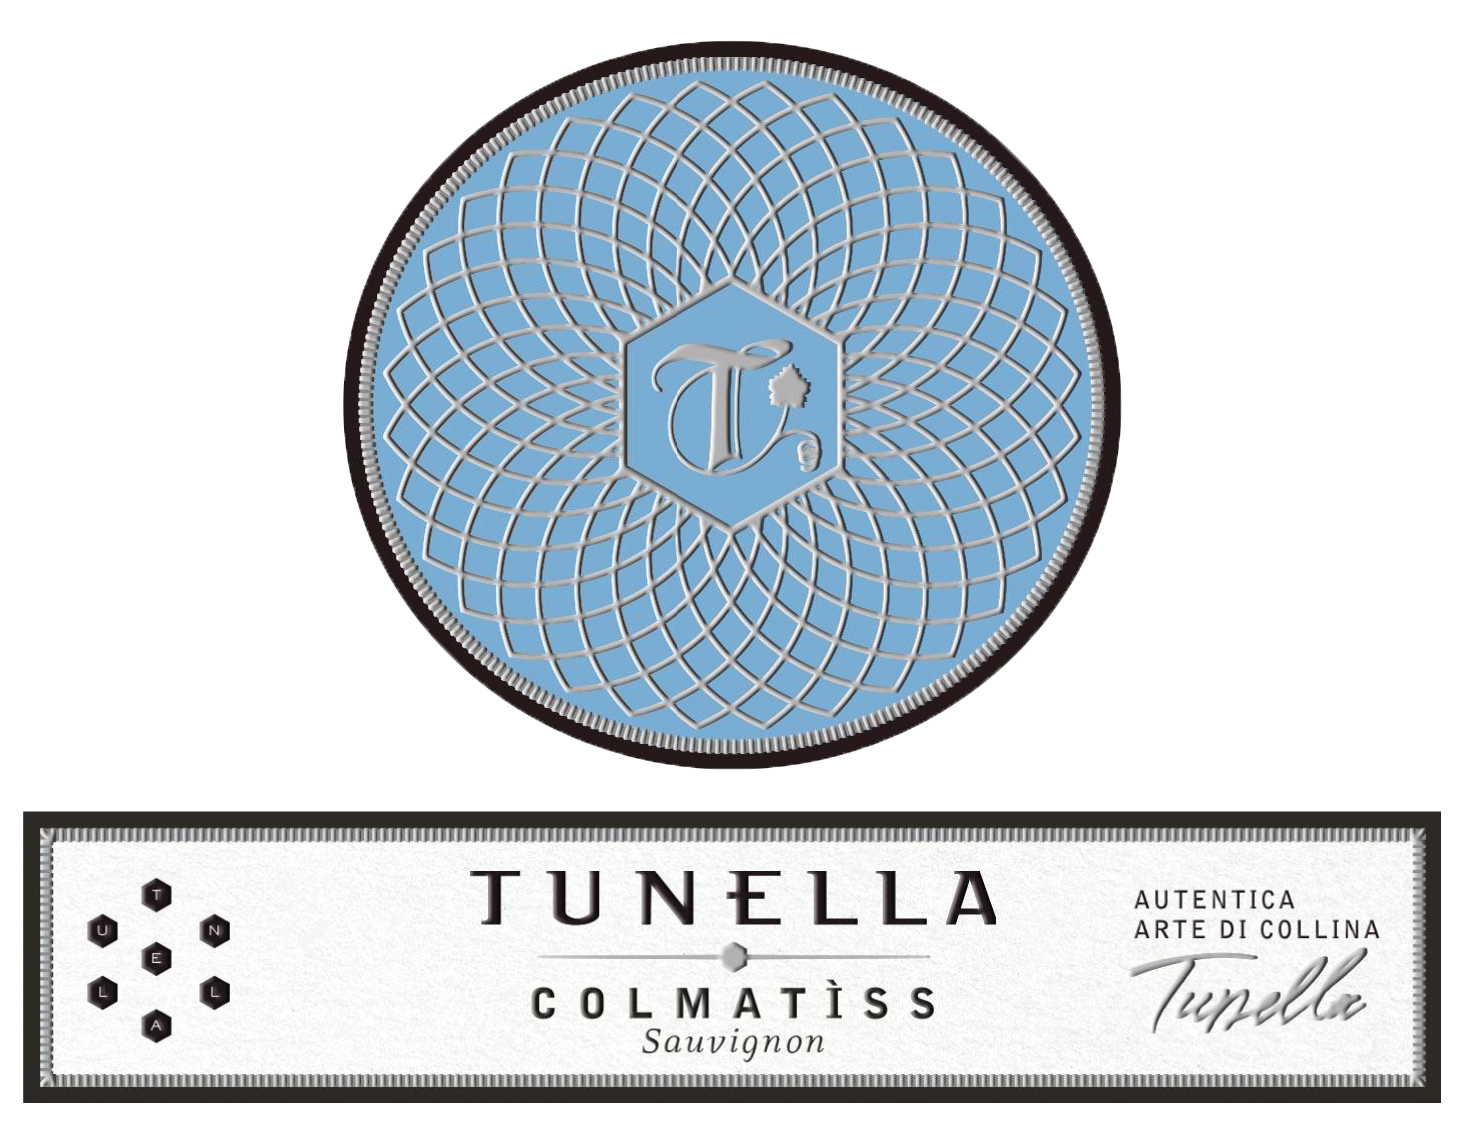 Tunella - Sauvignon Colmatiss label